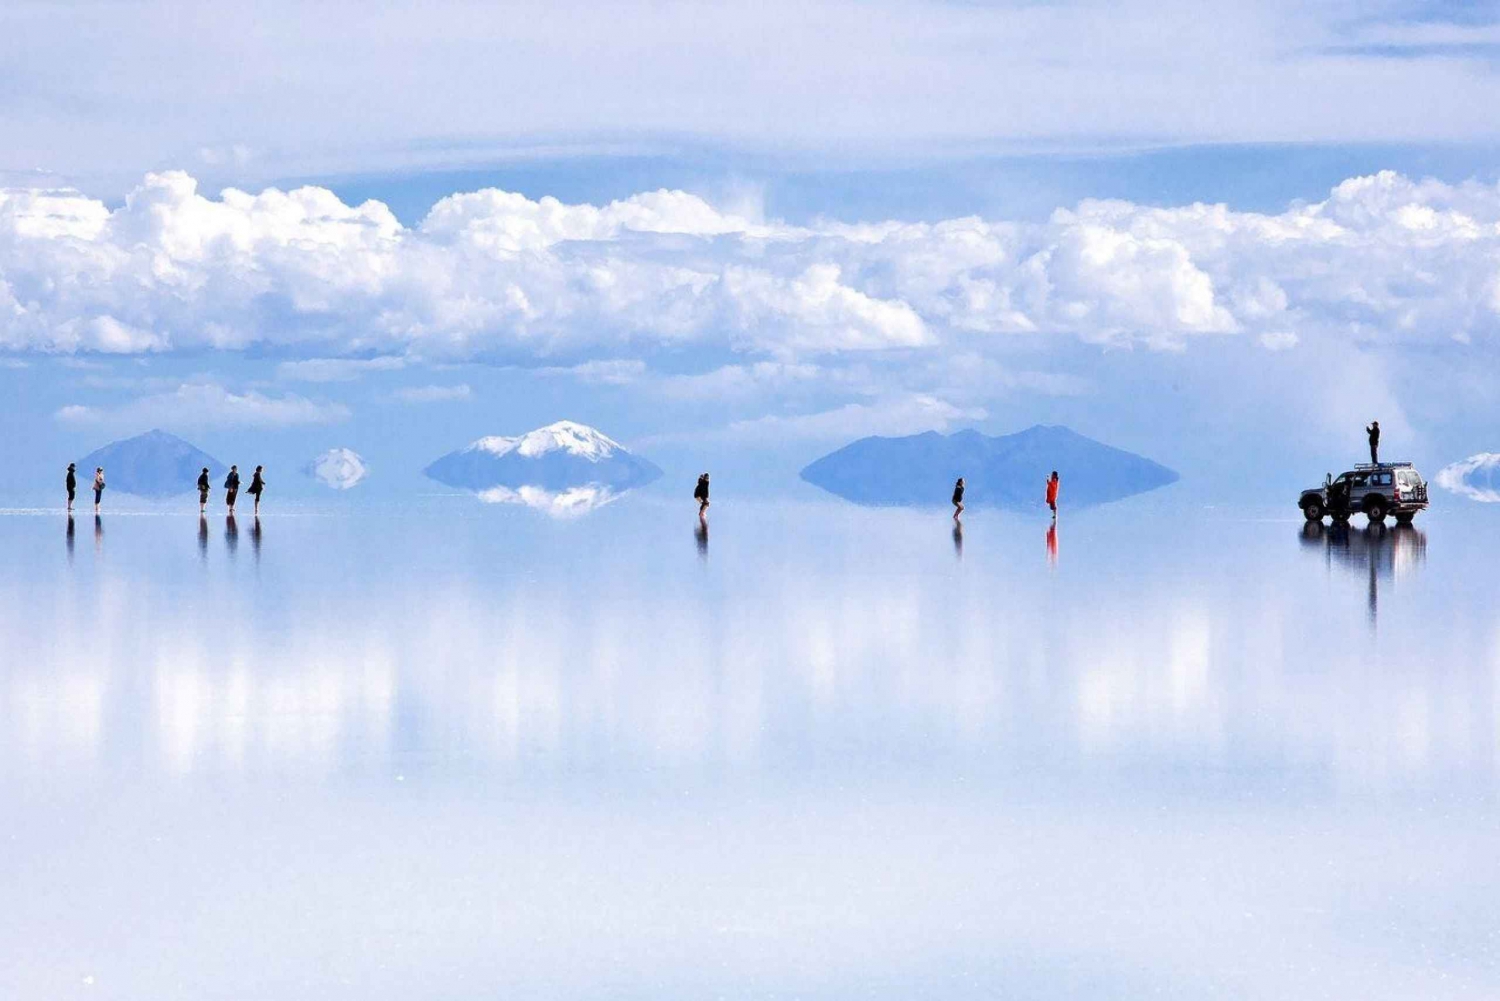 Salar de Uyuni - Excursão compartilhada + guia de turismo em espanhol